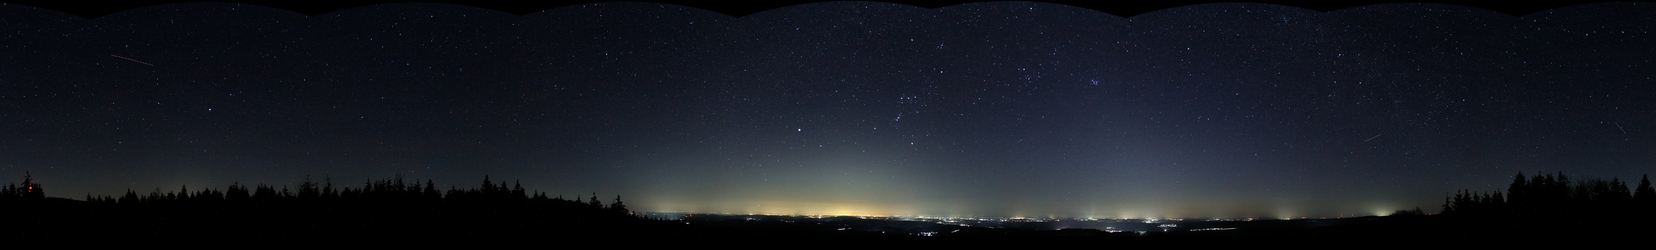 Bilstein/Hoher Vogelsberg; 15 s, f/3.5, 18 mm, ISO 1600; 21:45 MESZ (Astronomische Dämmerung); Planeten Sternenhimmel visuelle Beobachtung Venus Dämmerung Sternkarten Spiralgalaxien Satellit Astrokamera Himmelskörper